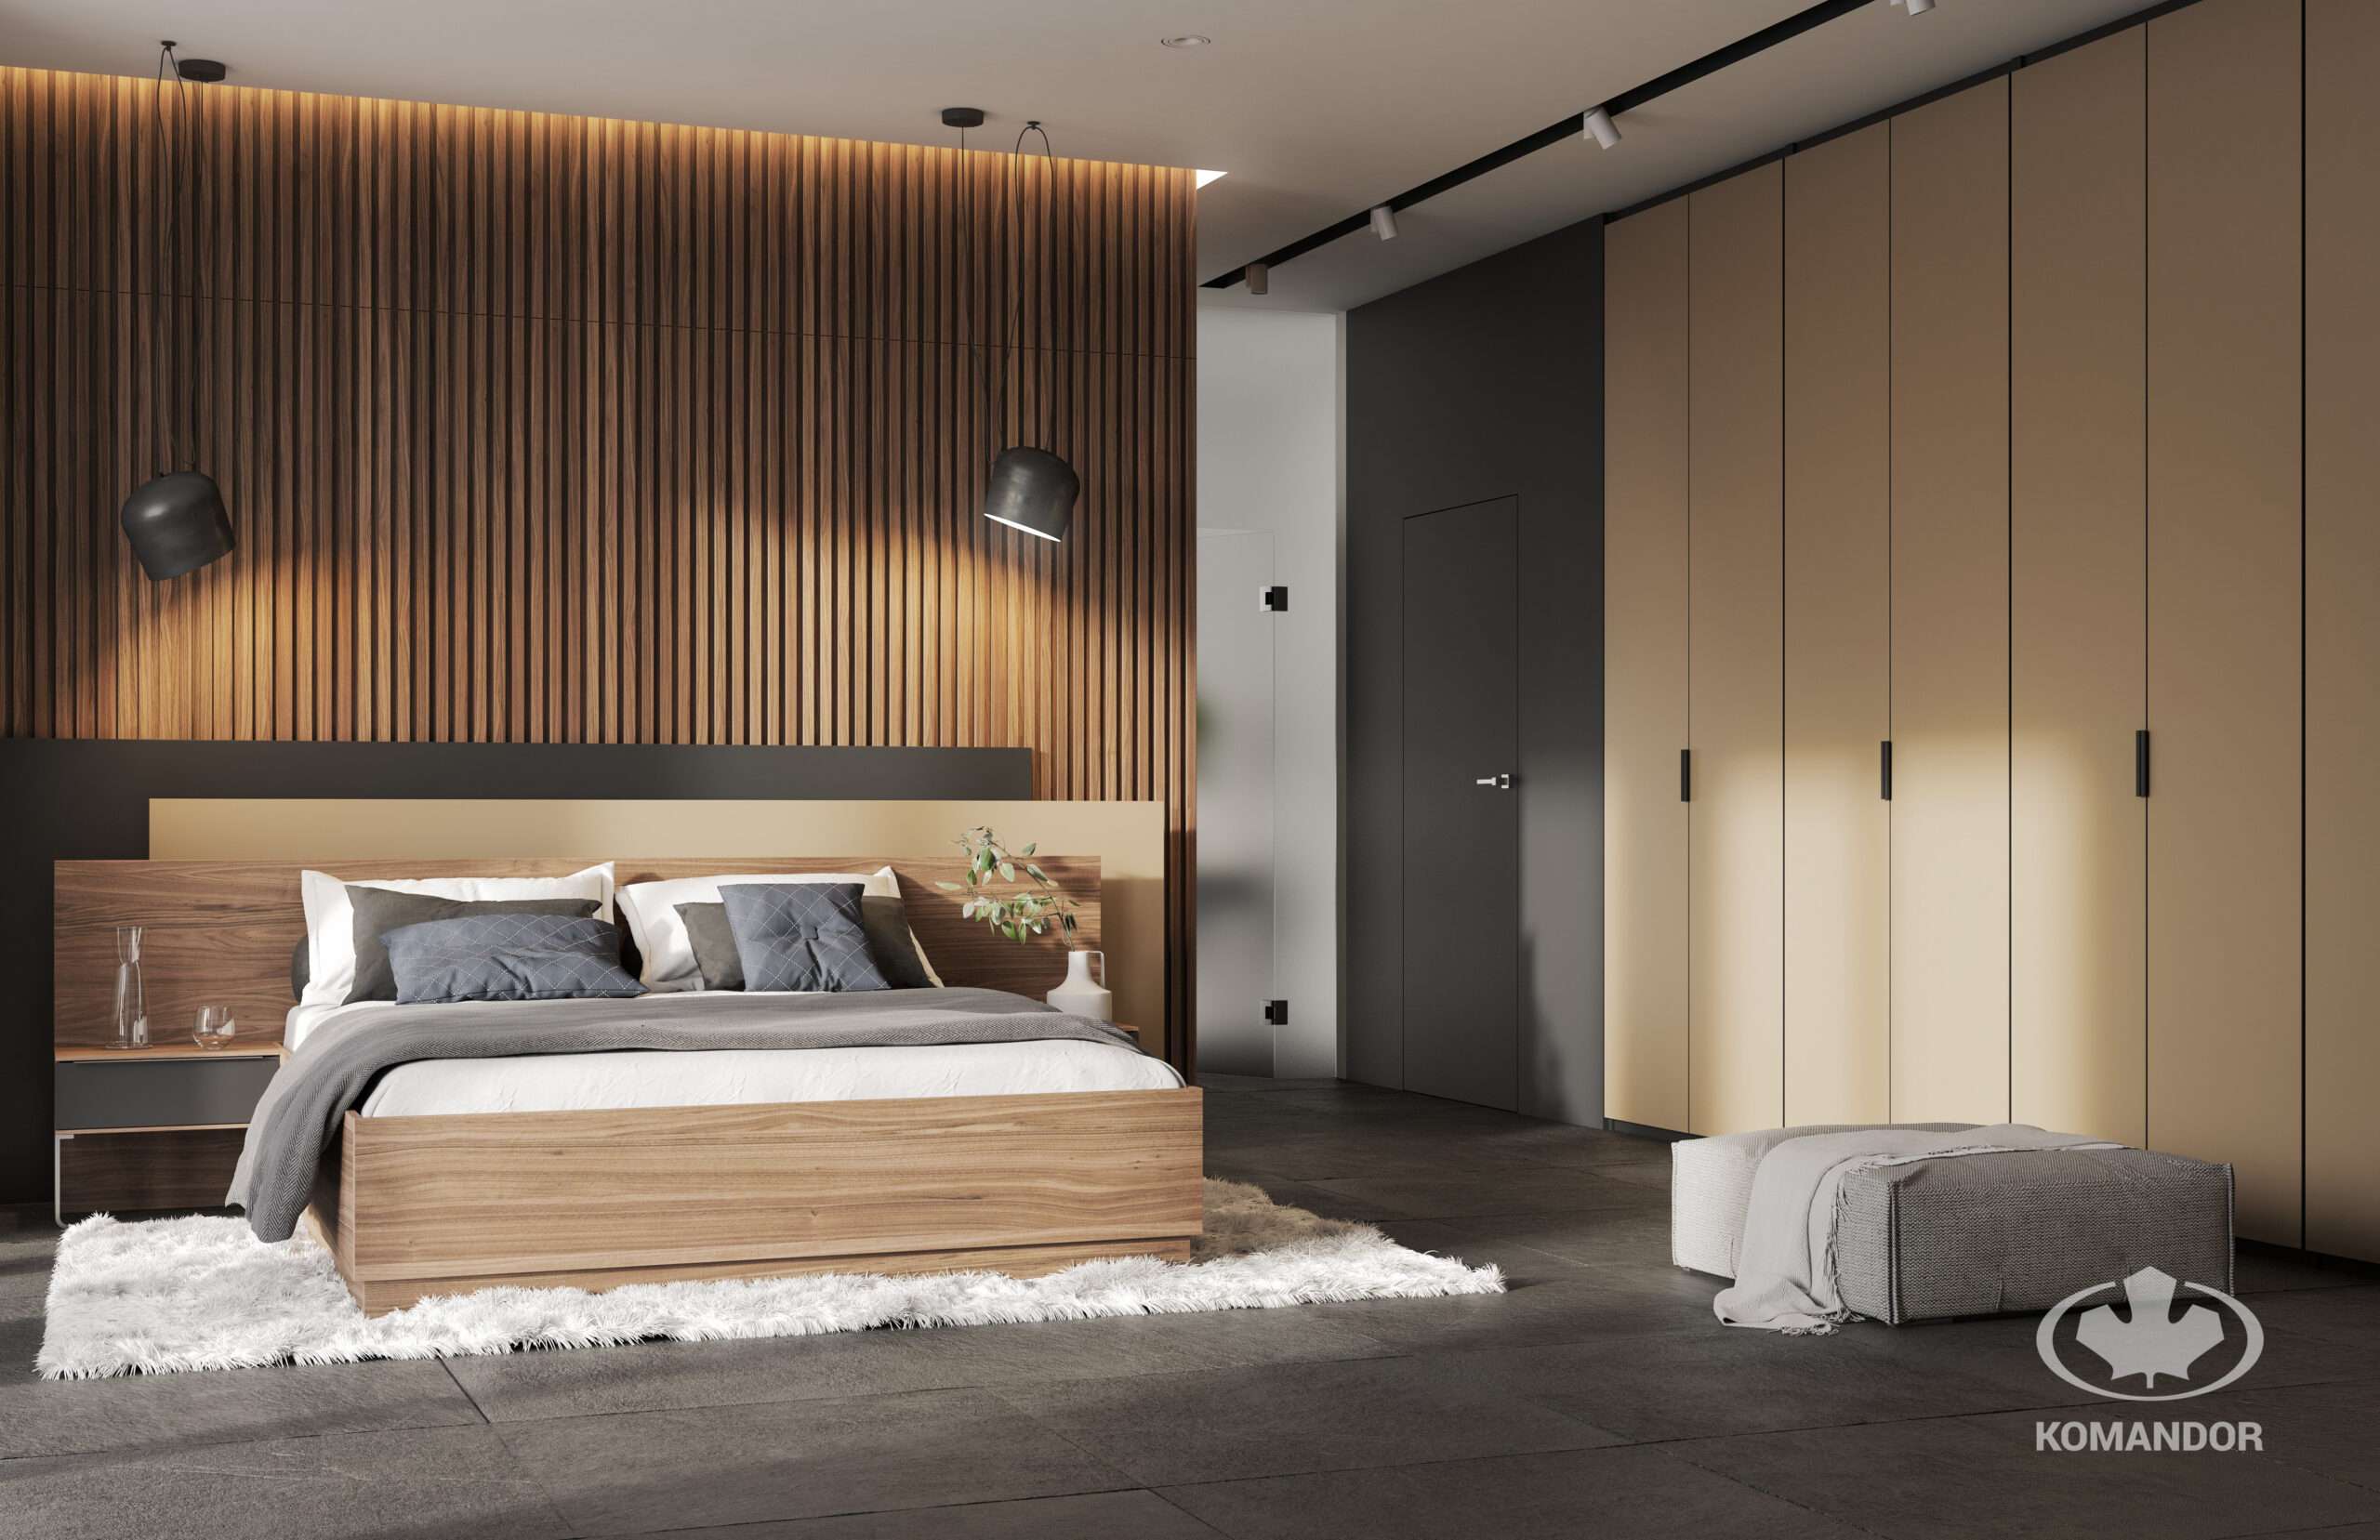 Világos gardróbszekrény, különleges ágy mögötti fal elemmel, mely megváltoztatják a hálószoba megjelenését